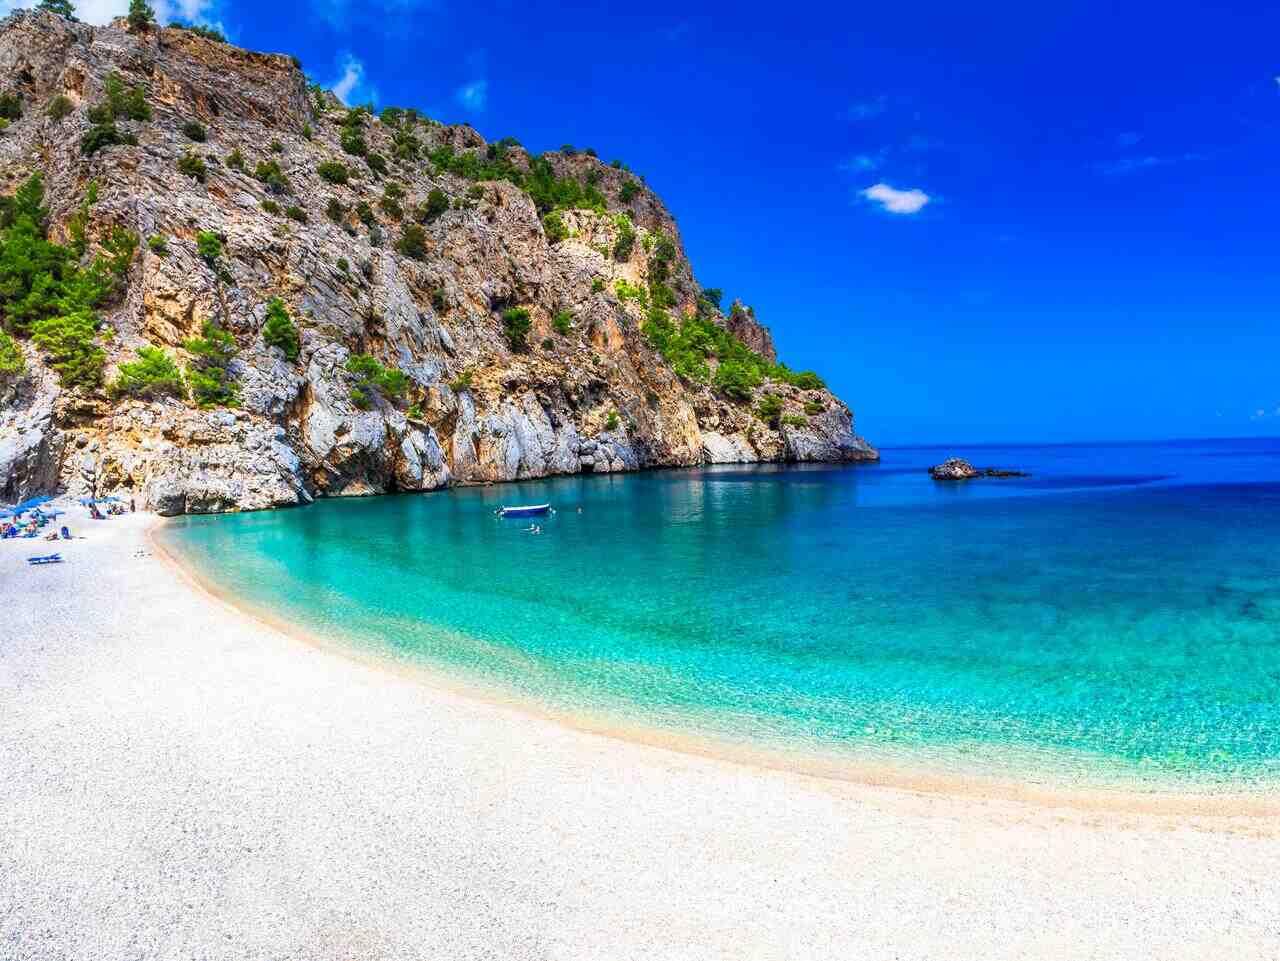 Фотогалерея 3: На каком греческом острове самые красивые пляжи?